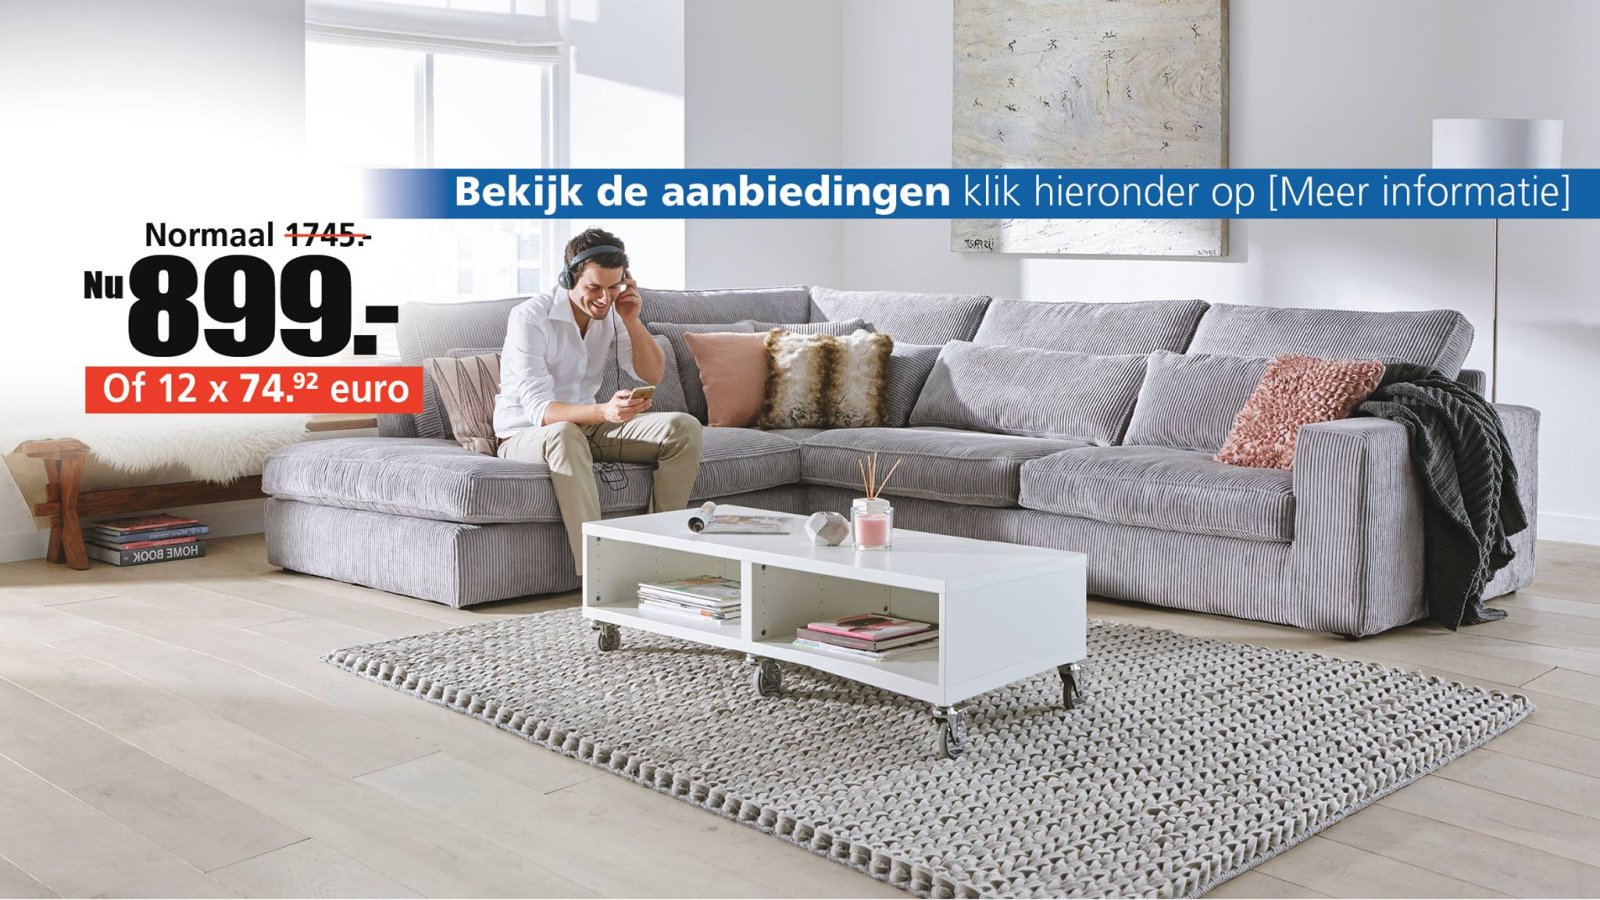 Rechtdoor De Kamer bladerdeeg Seats and Sofas NL - Oosterhout City App